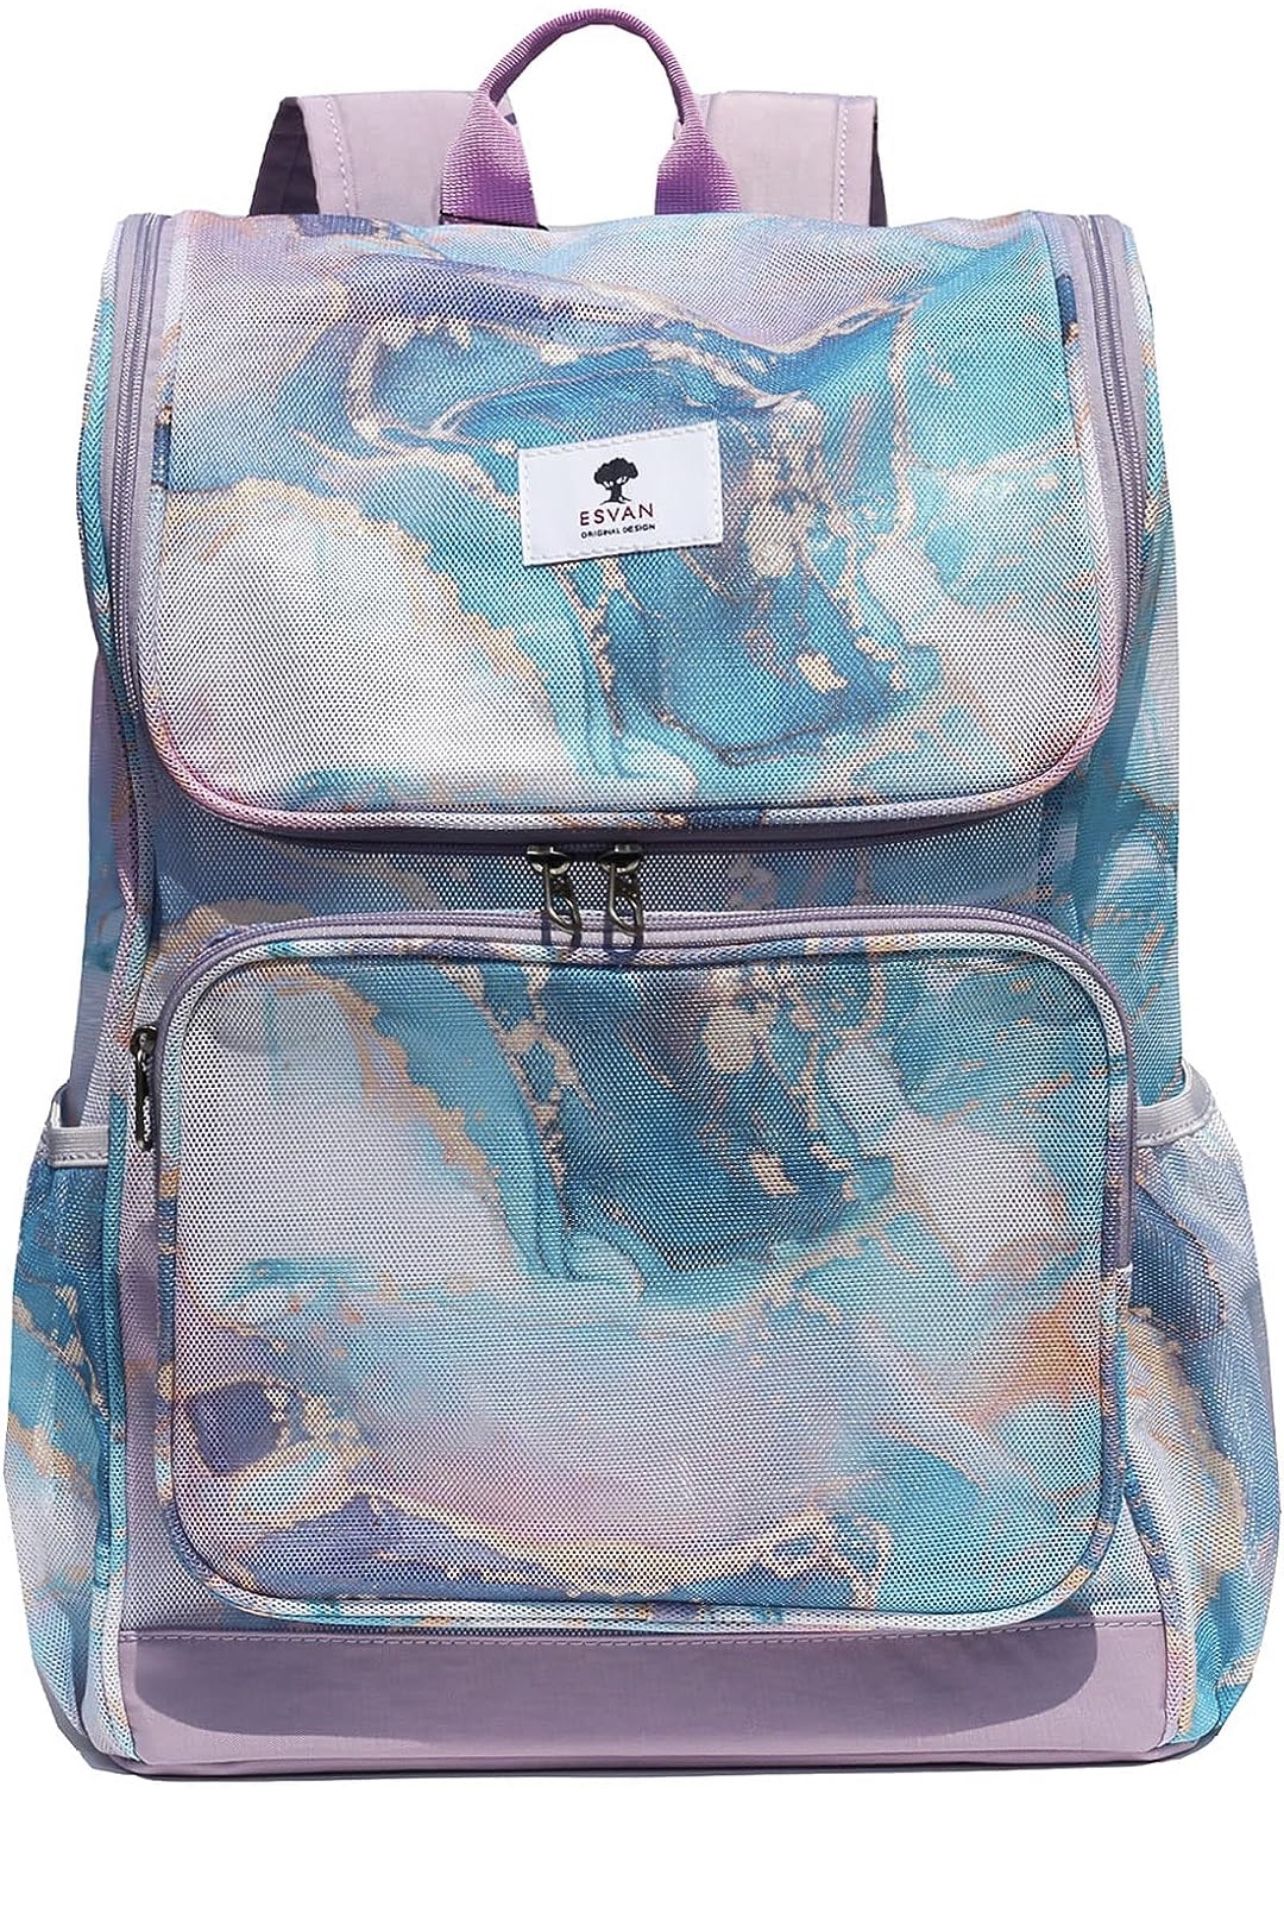 ESVAN Mesh Backpack 